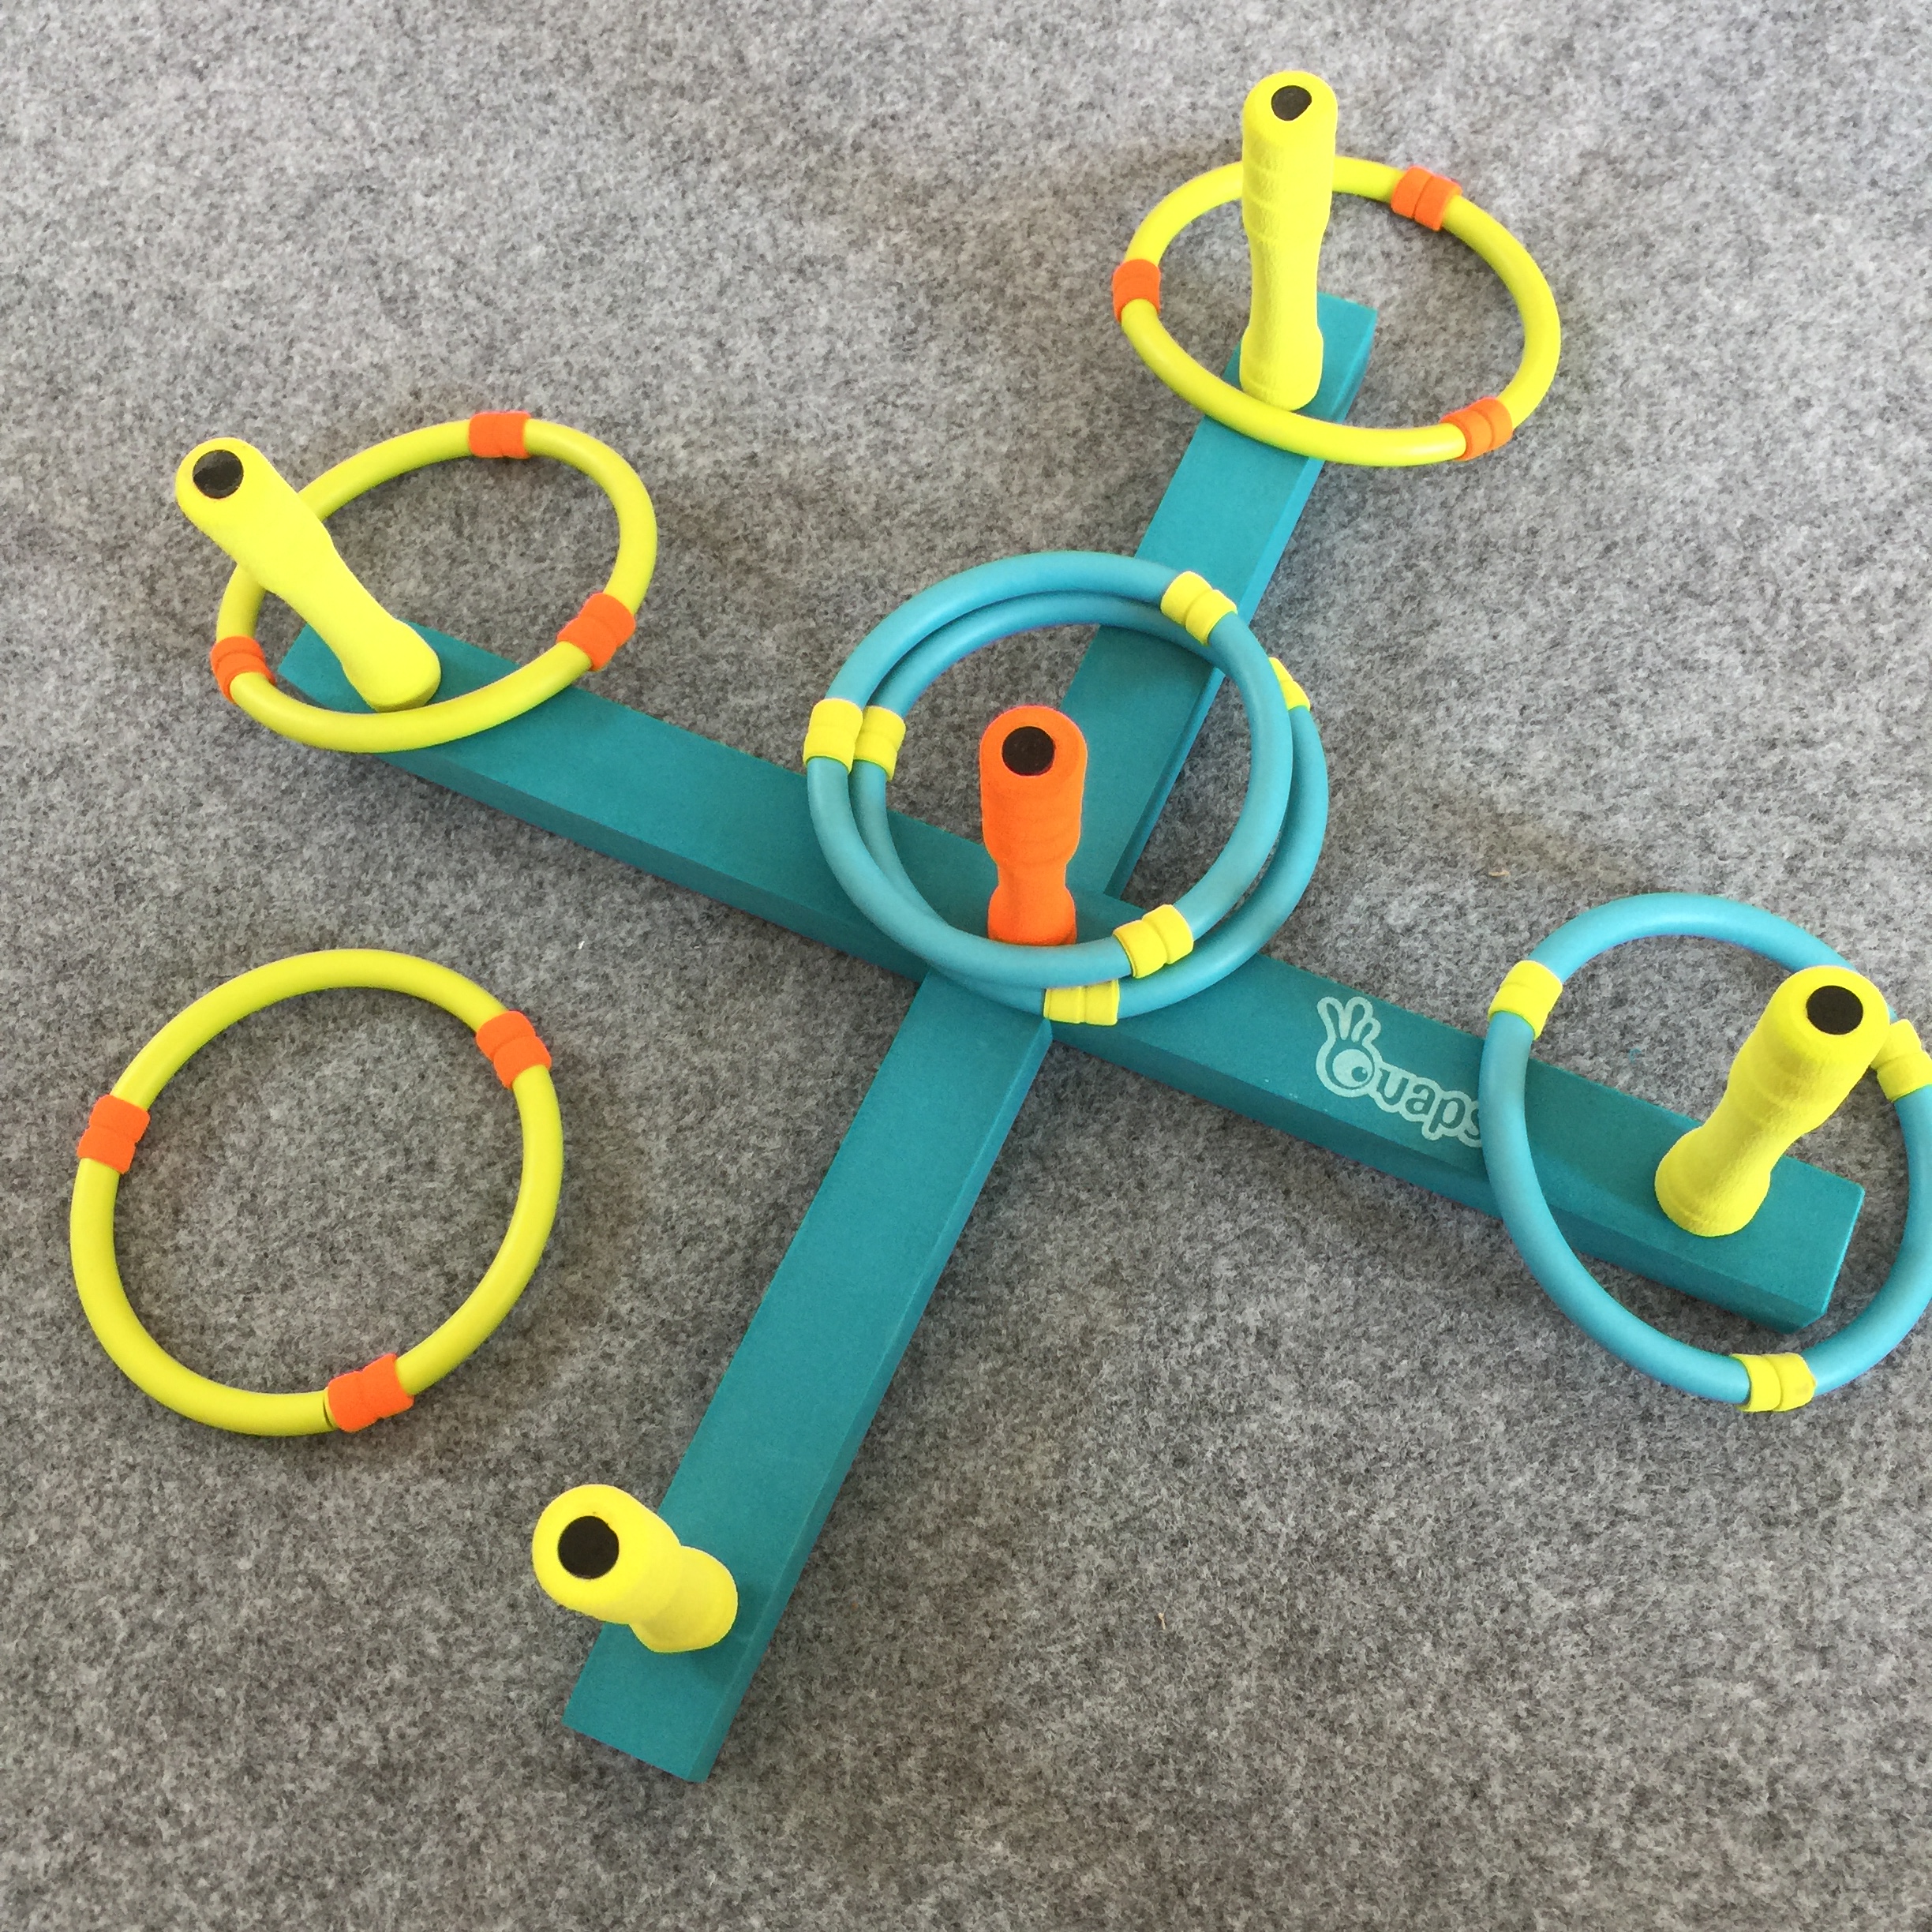 东莞市投掷圈厂家投掷圈  圈圈乐儿童玩具 亲子室内外互动玩具幼儿园开发孩子大脑和身体协调重要早教器材